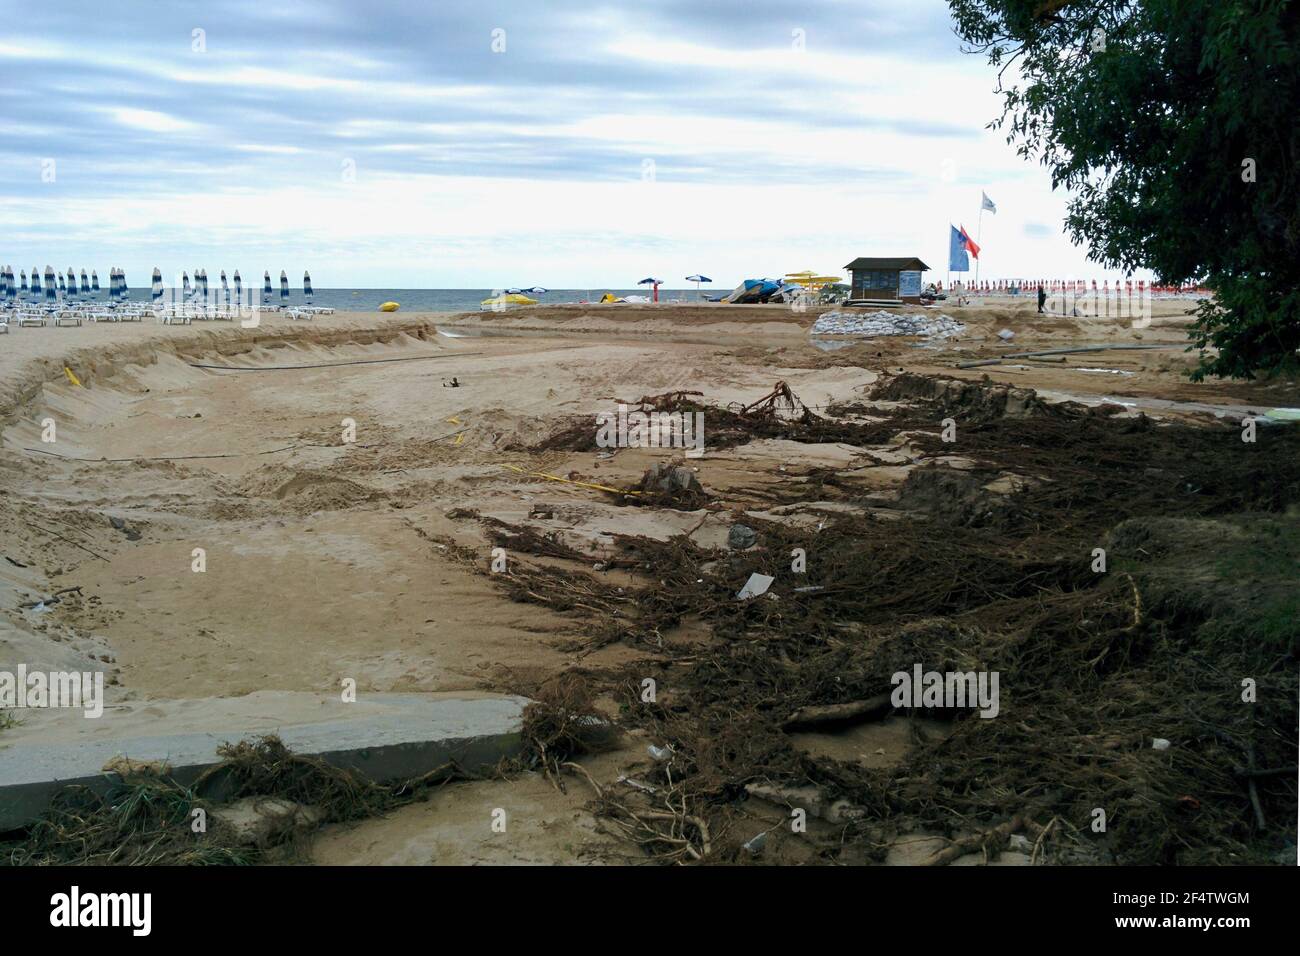 Сonsequences di uragano su una spiaggia confortevole. Foto Stock